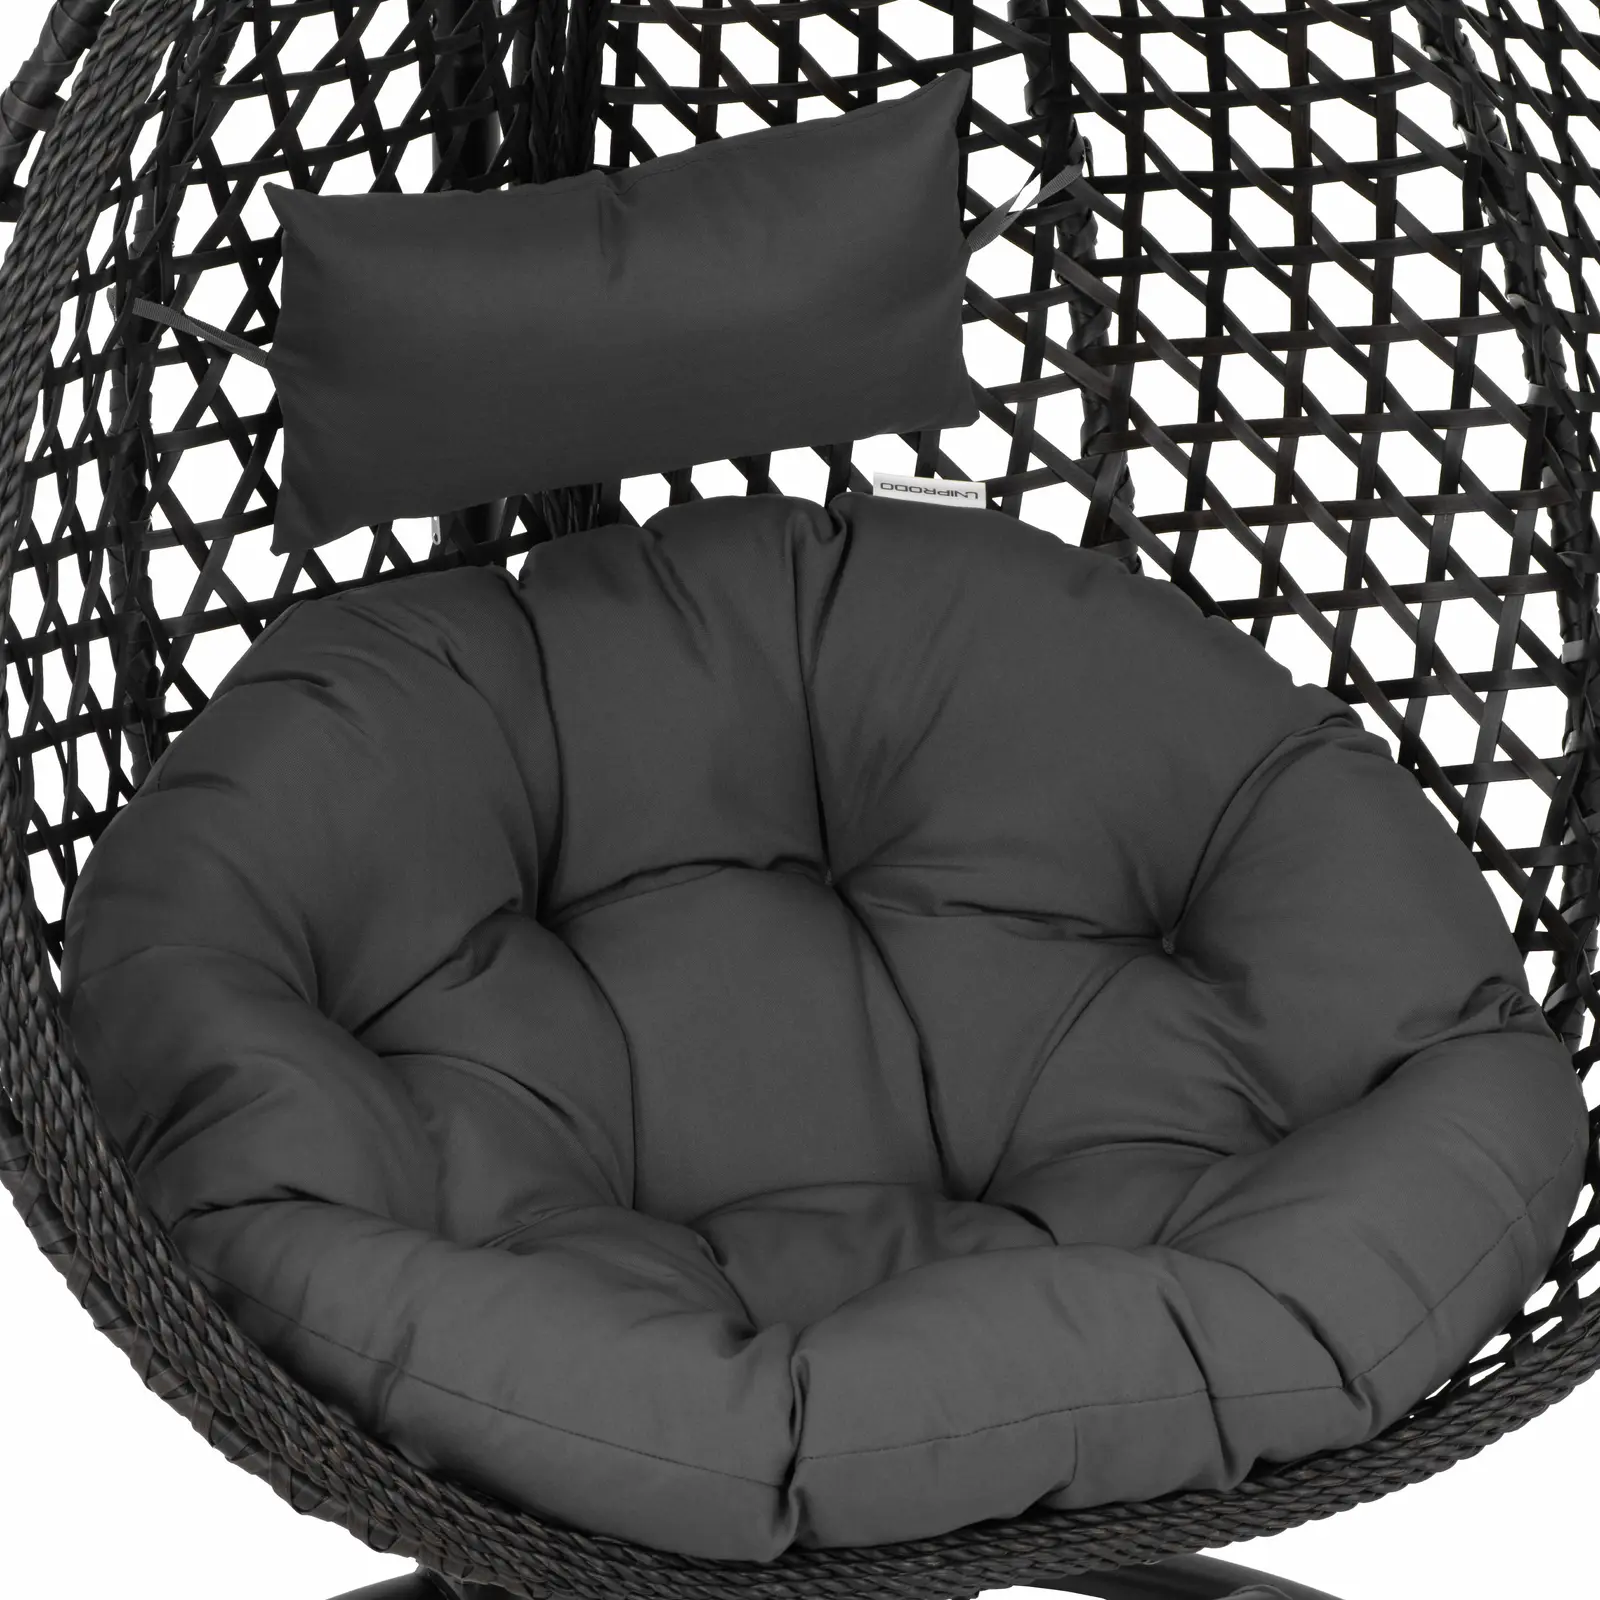 Venkovní závěsné křeslo s rámem - skládací sedák - černá/šedá - tvar slzy